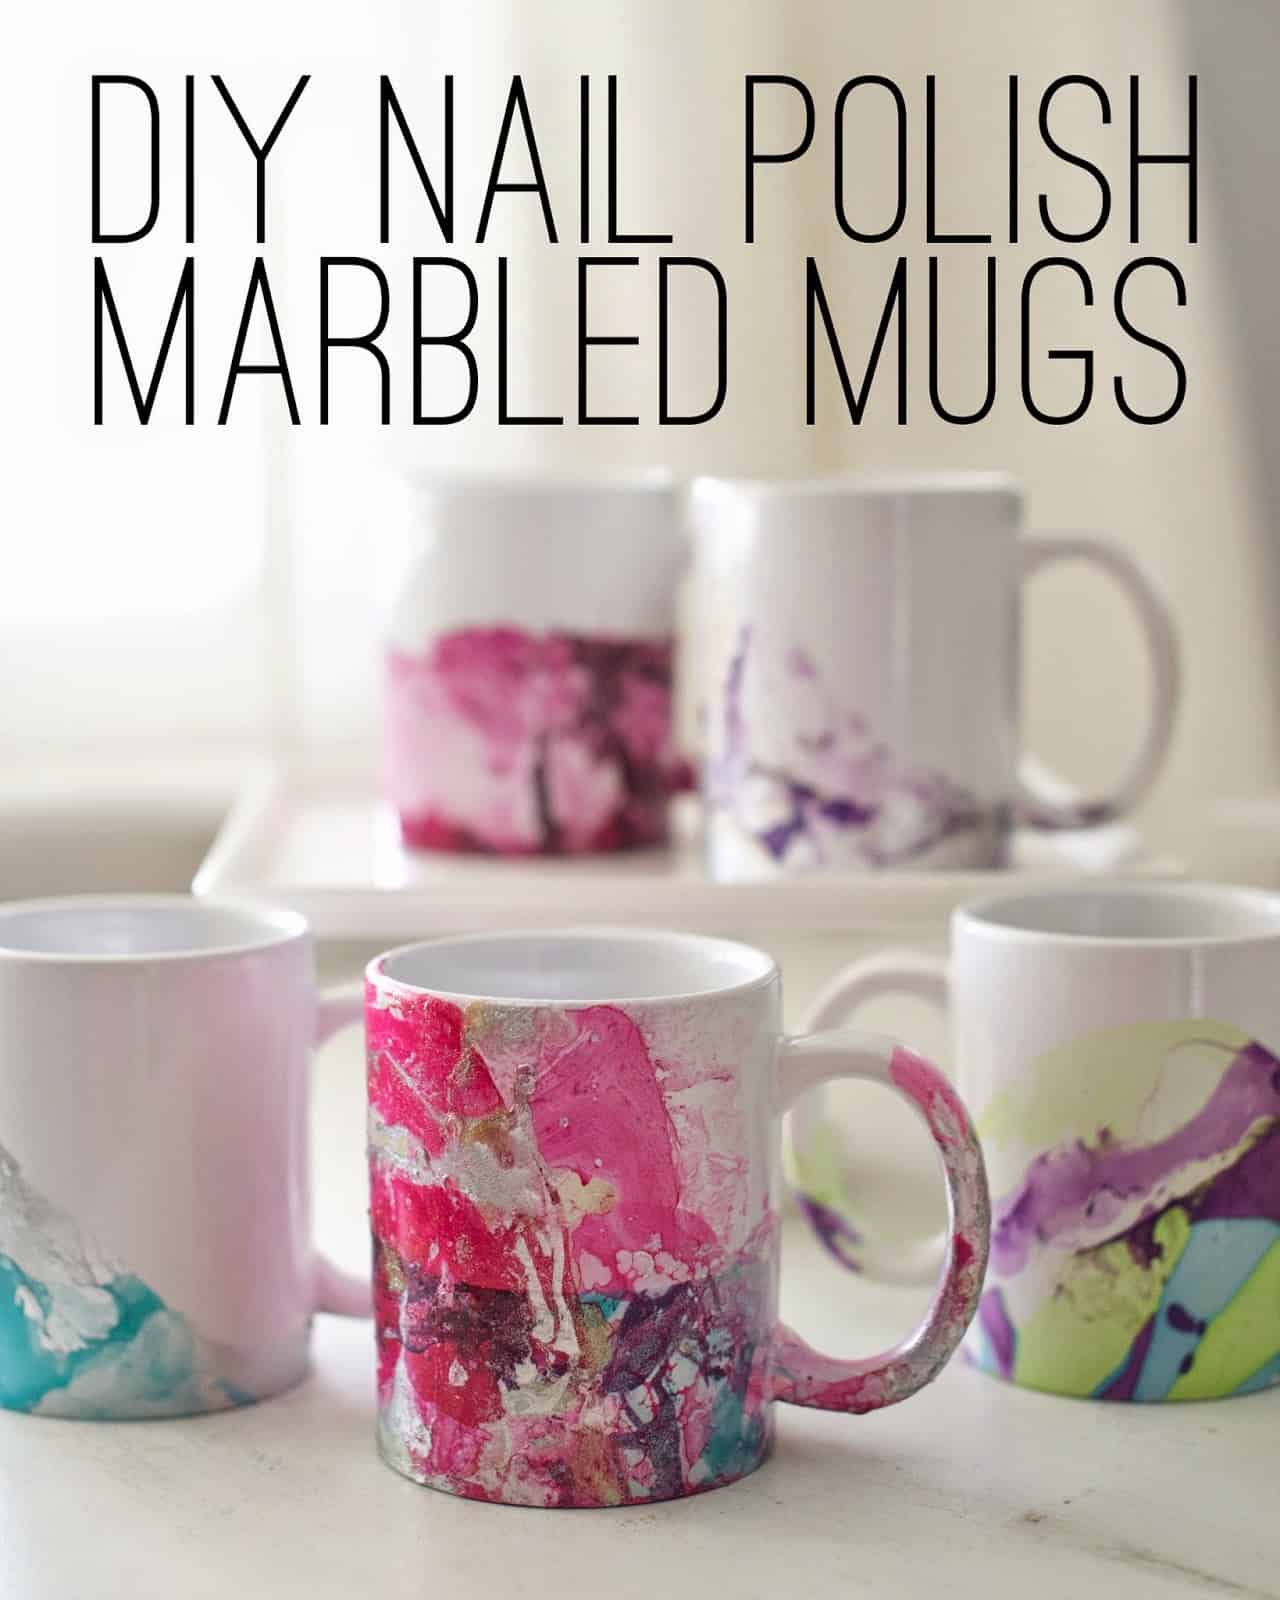 Marbled nail polish mugs